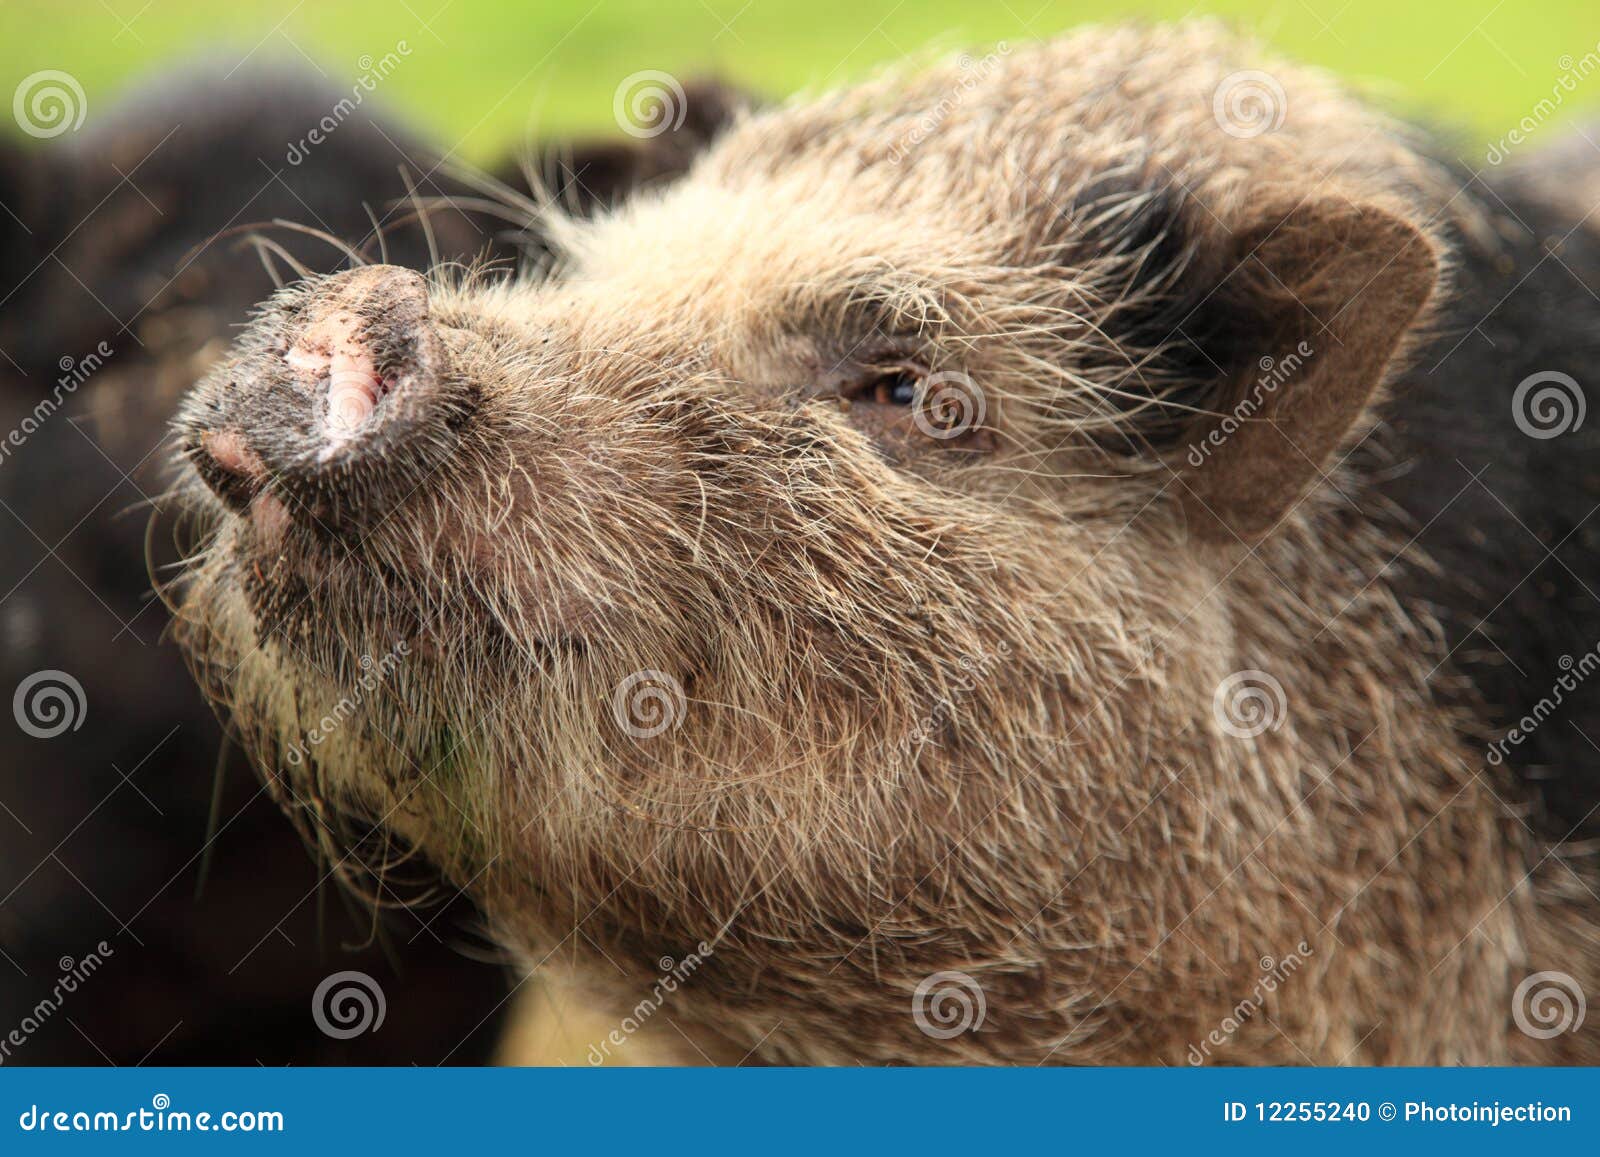 pot-bellied pig face snout